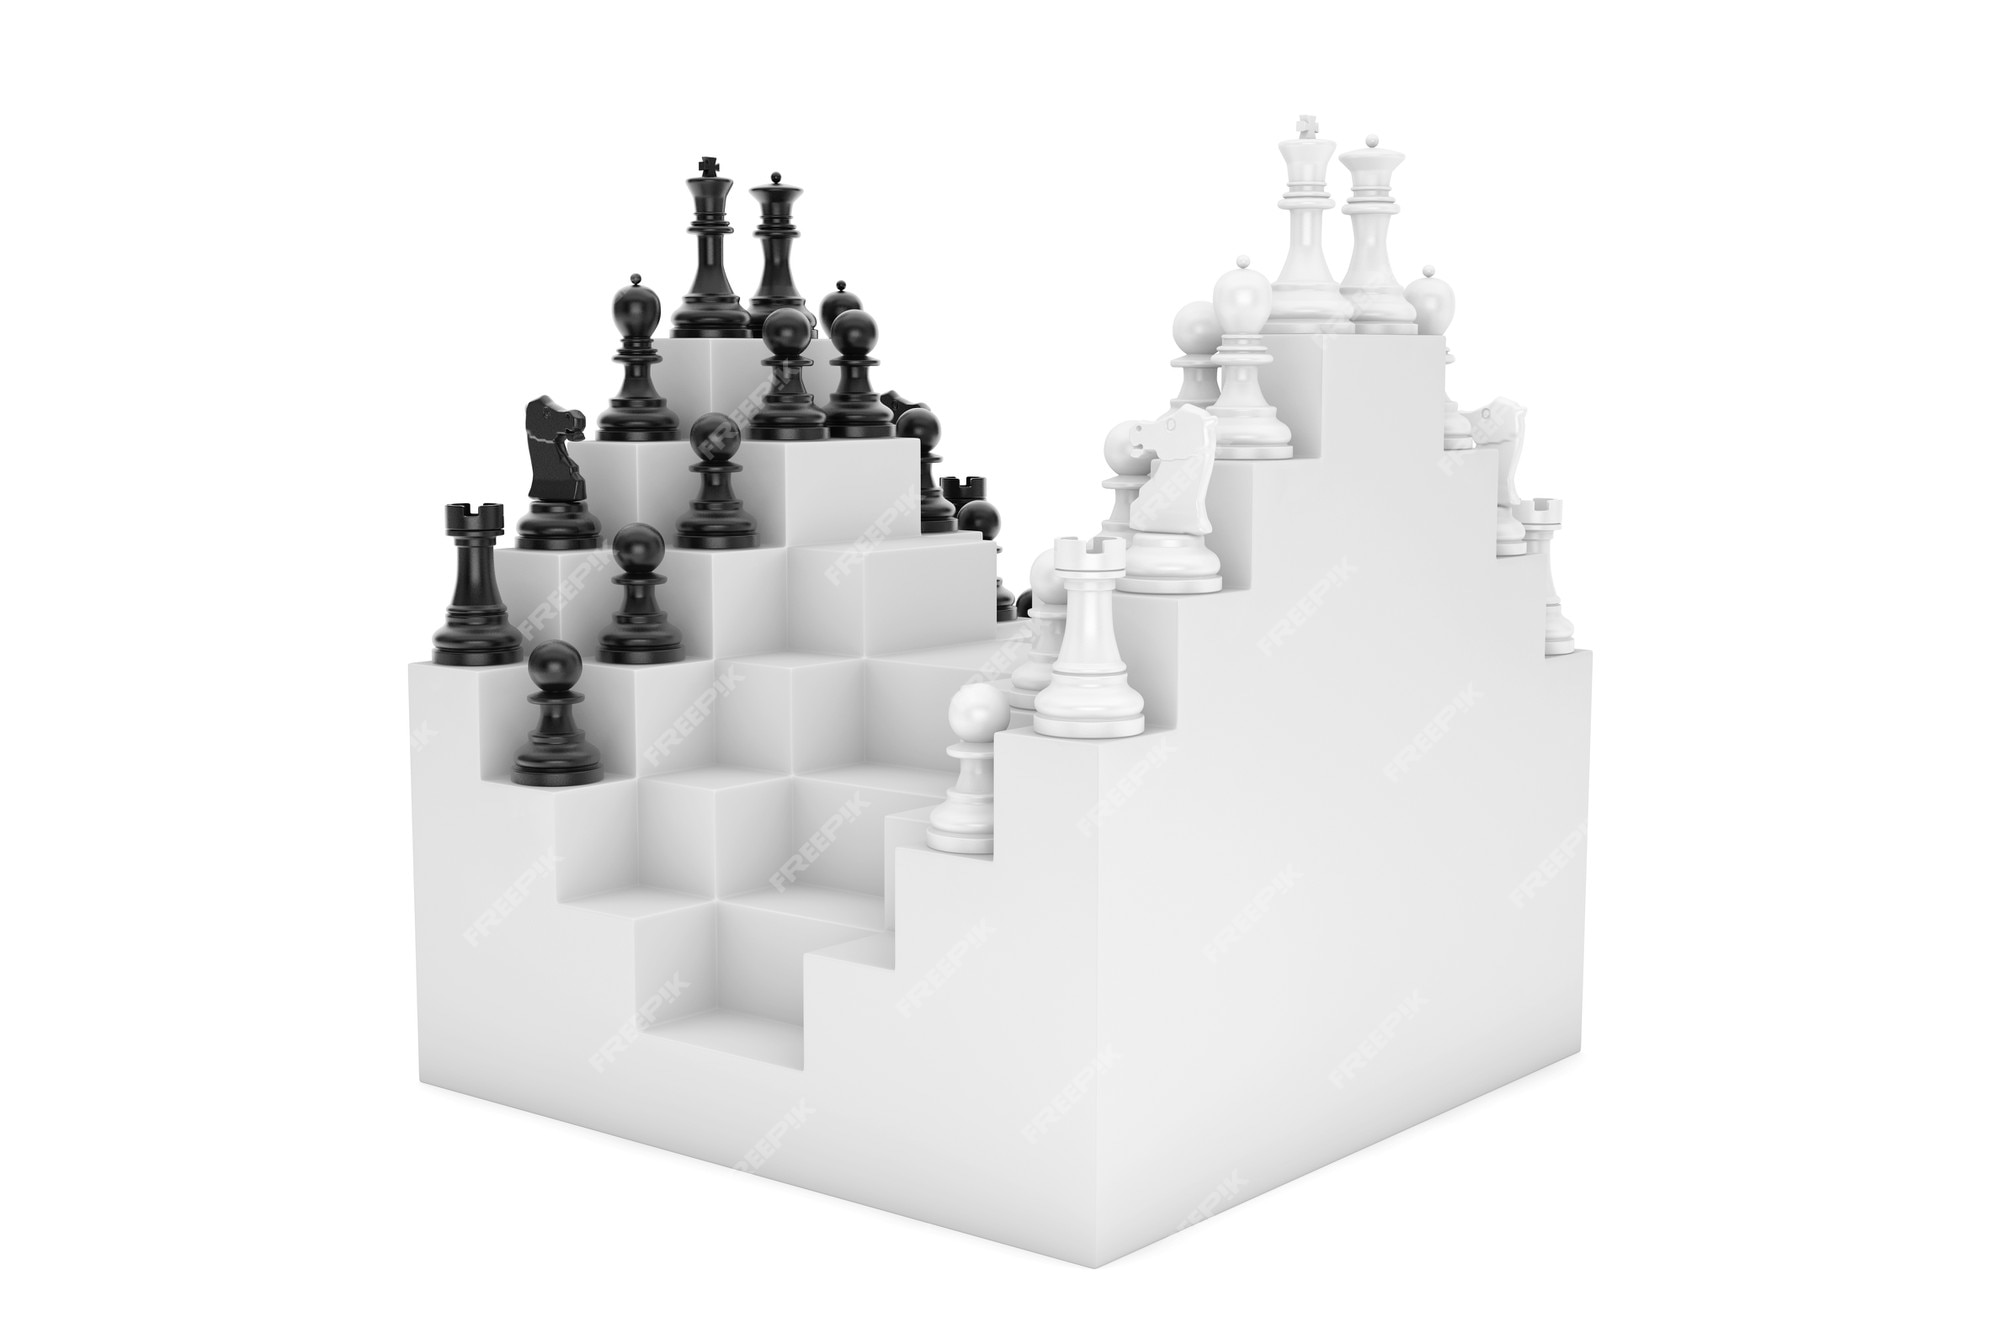 Foto de Partes Do Chess No Tabuleiro De Xadrez e mais fotos de stock de  Abstrato - Abstrato, Arranjar, Atividade Recreativa - iStock